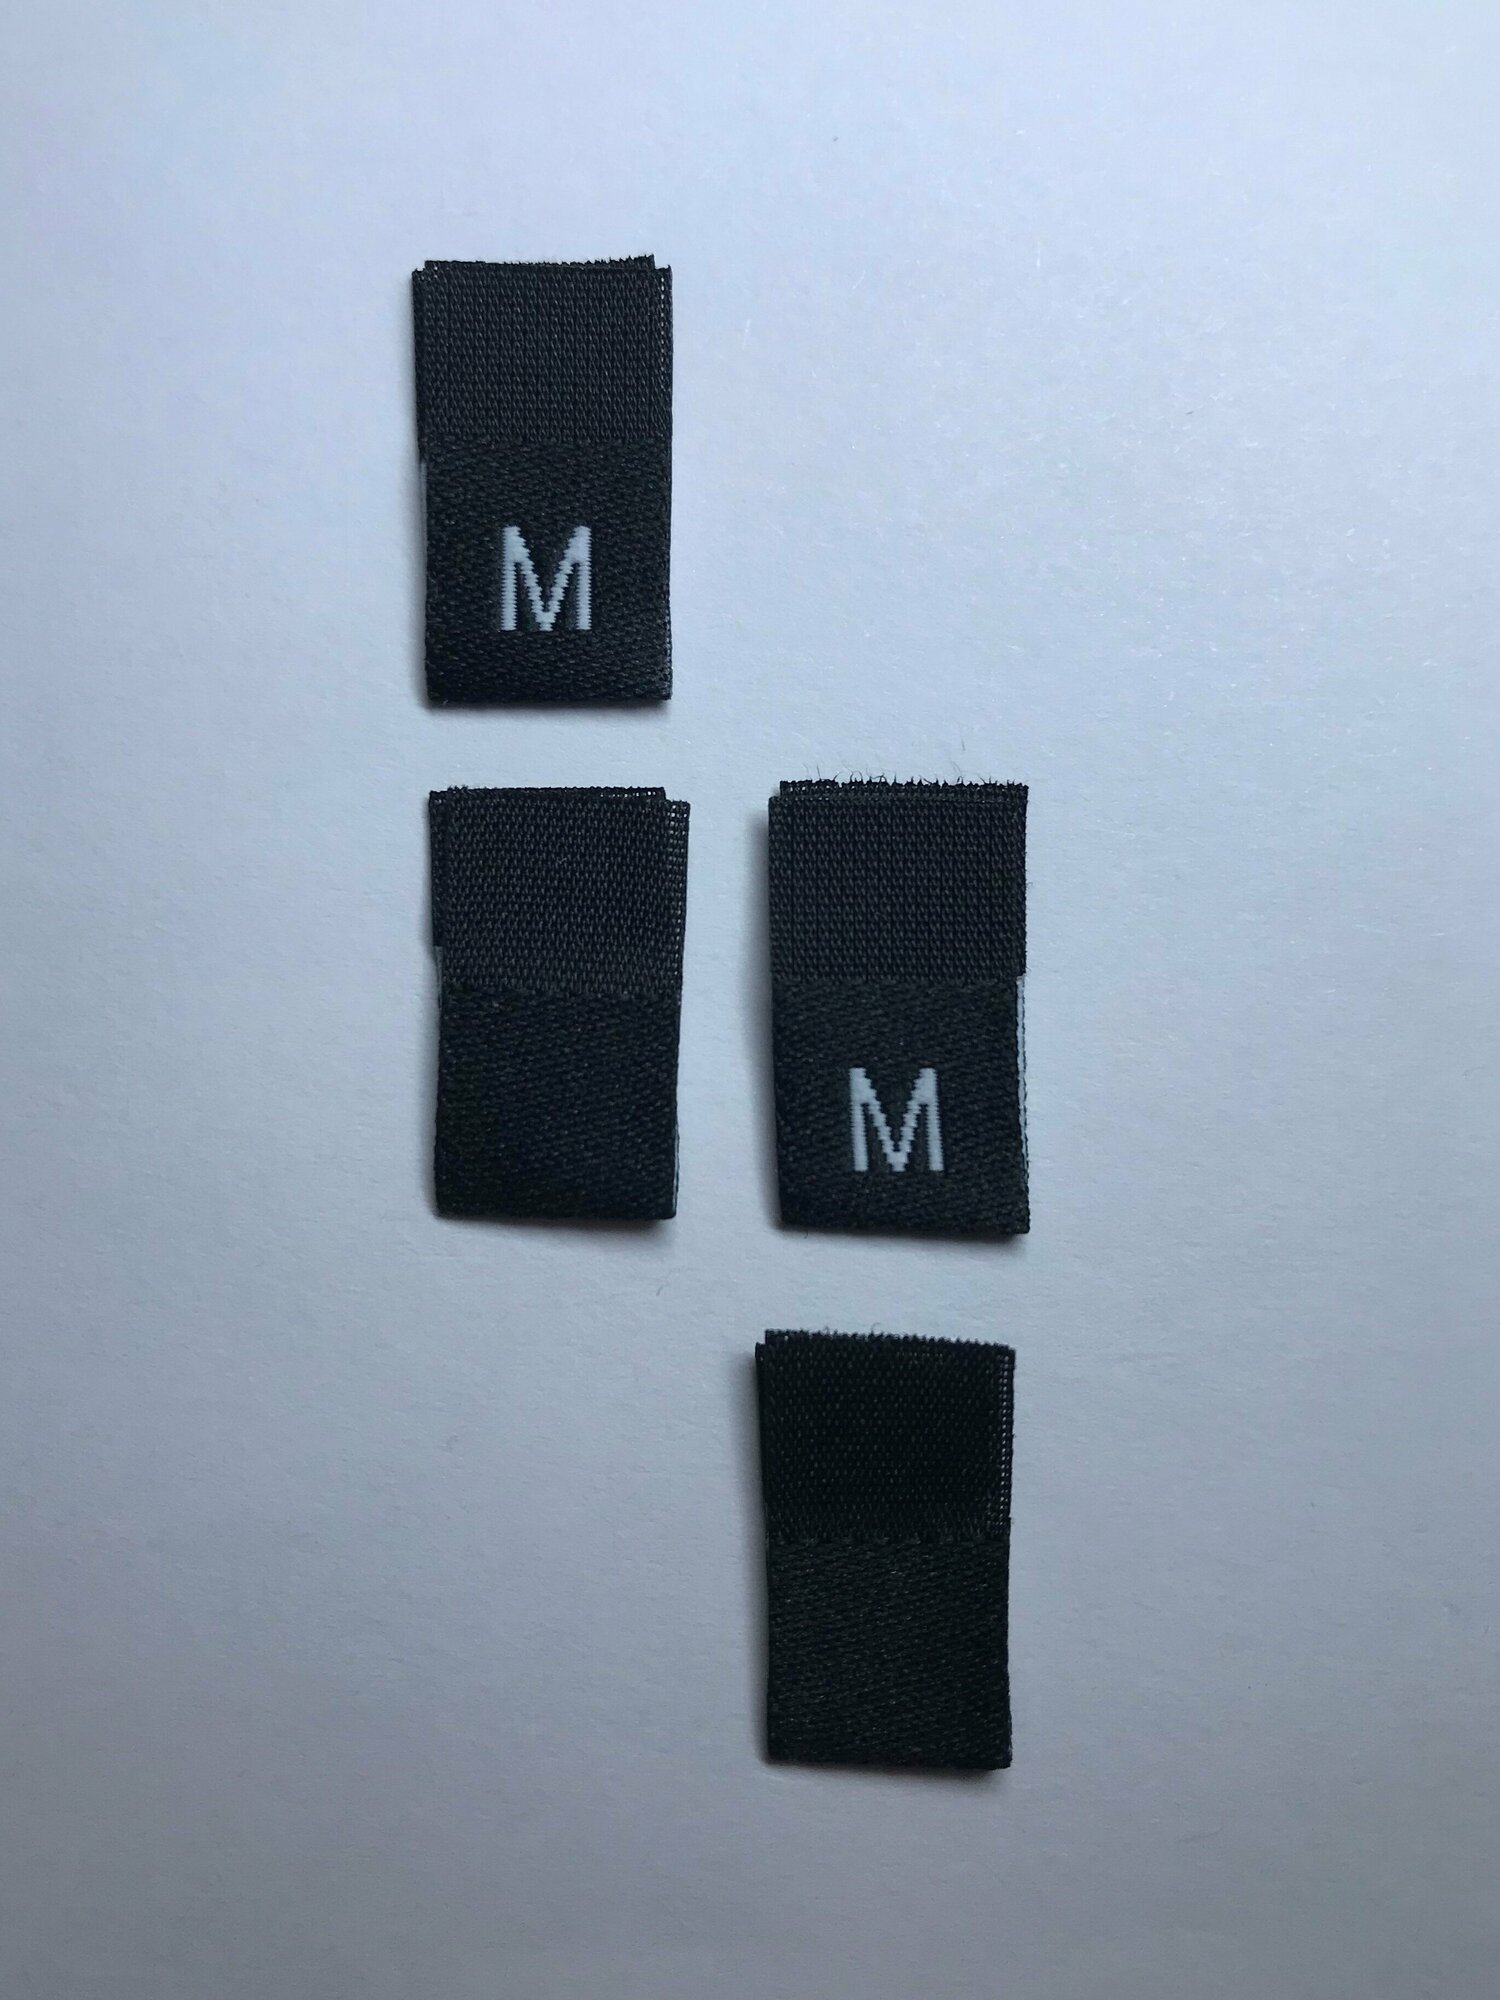 Размерник для одежды жаккардовый пришивной черный/ Набор 7 размеров по 20 шт. (XS, S, M, L, XL, XXL, 3XL), 140 шт